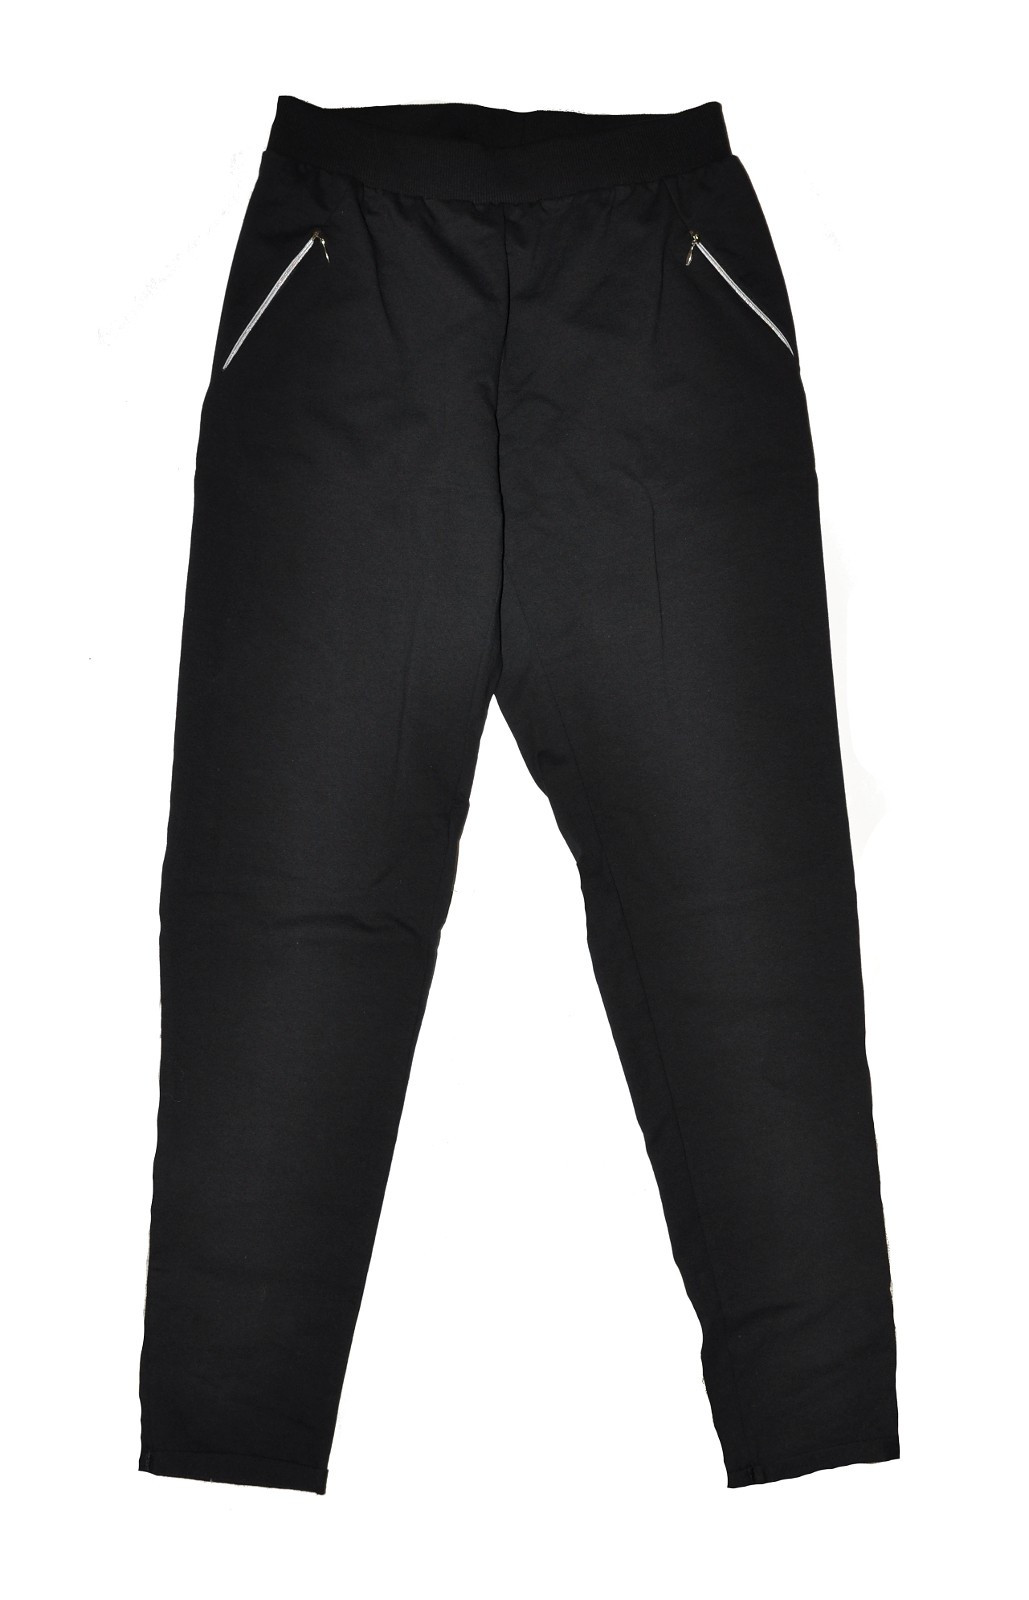 Dámské kalhoty De Lafense 604 Just černá S